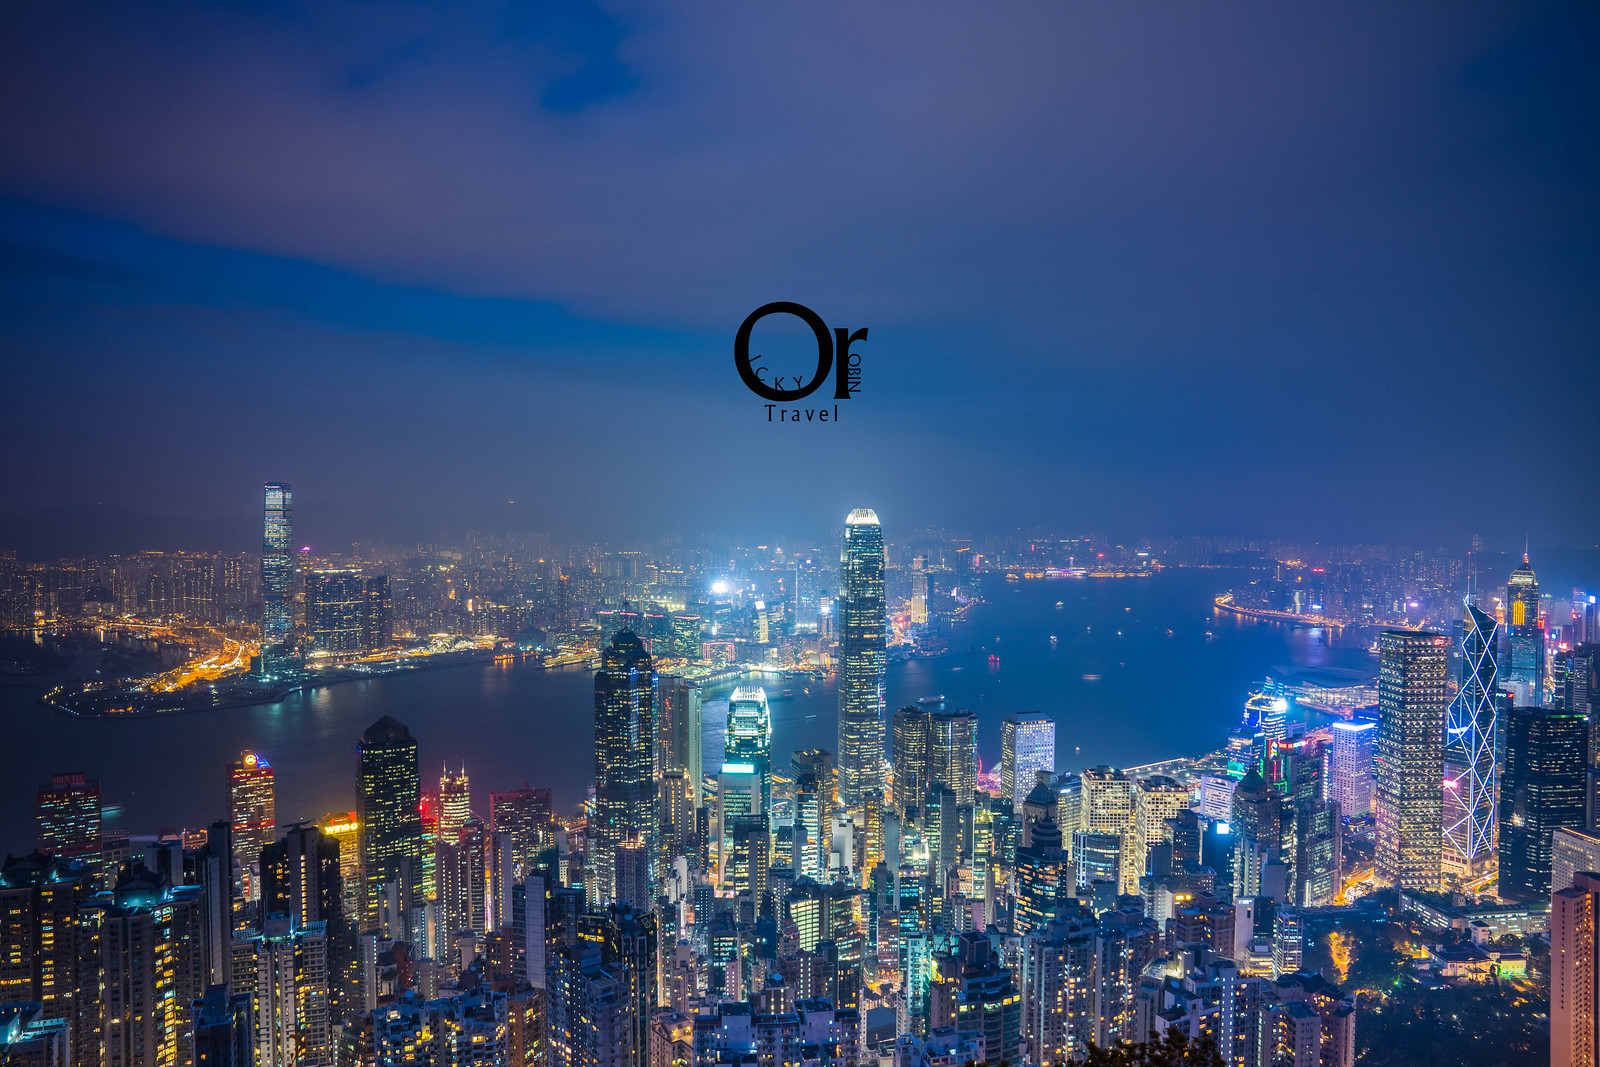 香港攝影景點 盧吉道眺望香港夜色 別於凌霄閣在太平山上的另一個夜景點 更不一樣的香港夜景視野 羅賓的攝影漫步